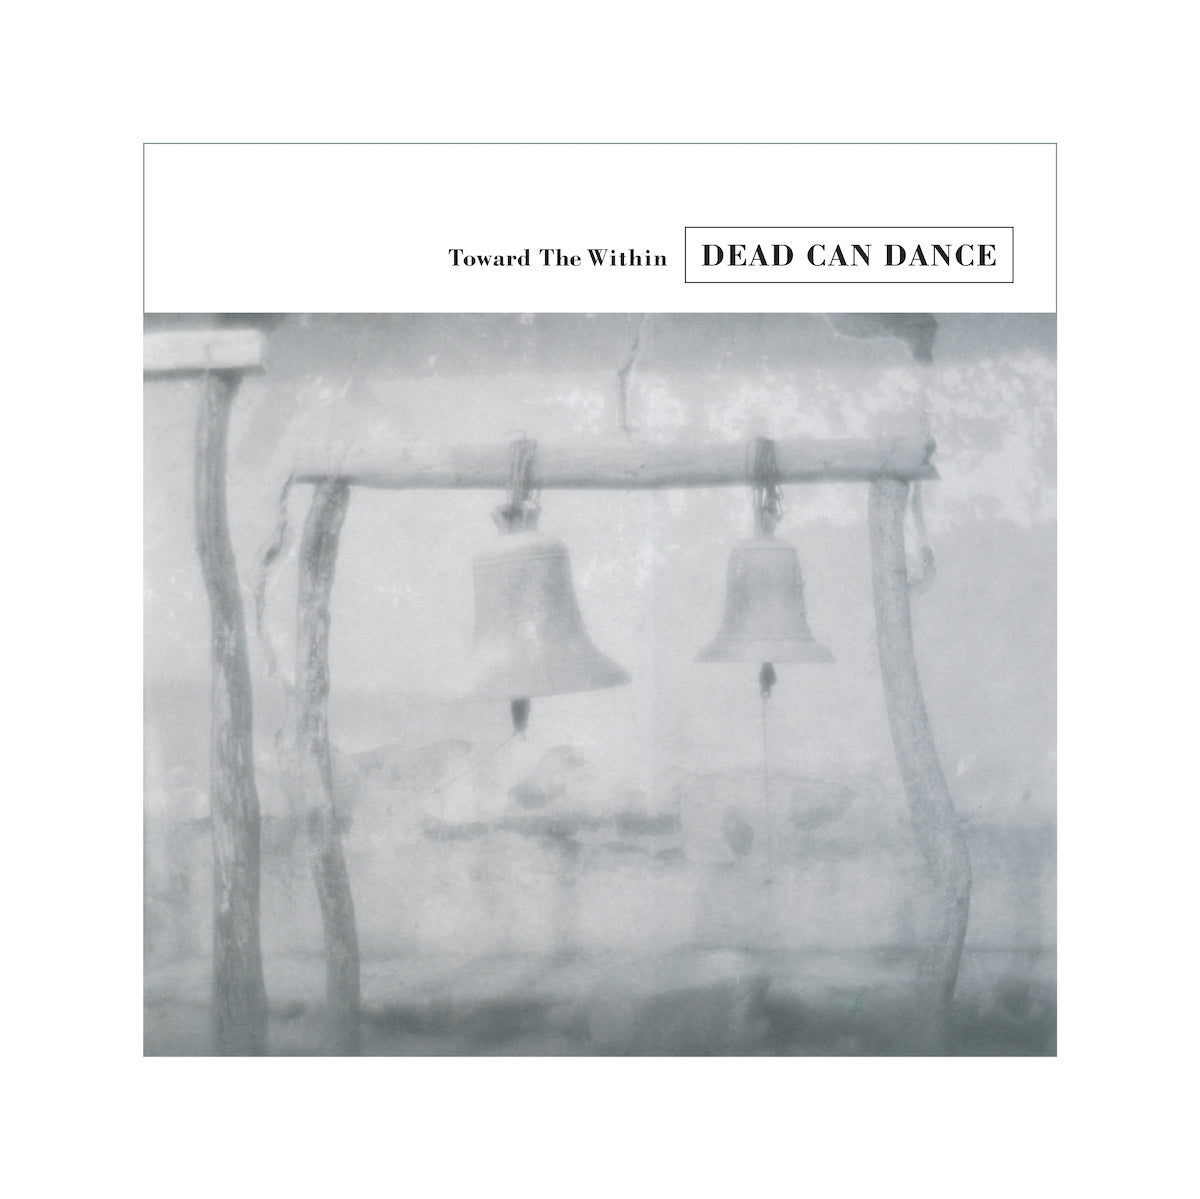 DEAD CAN DANCE - TOWARD THE WITHIN Vinyl 2xLp